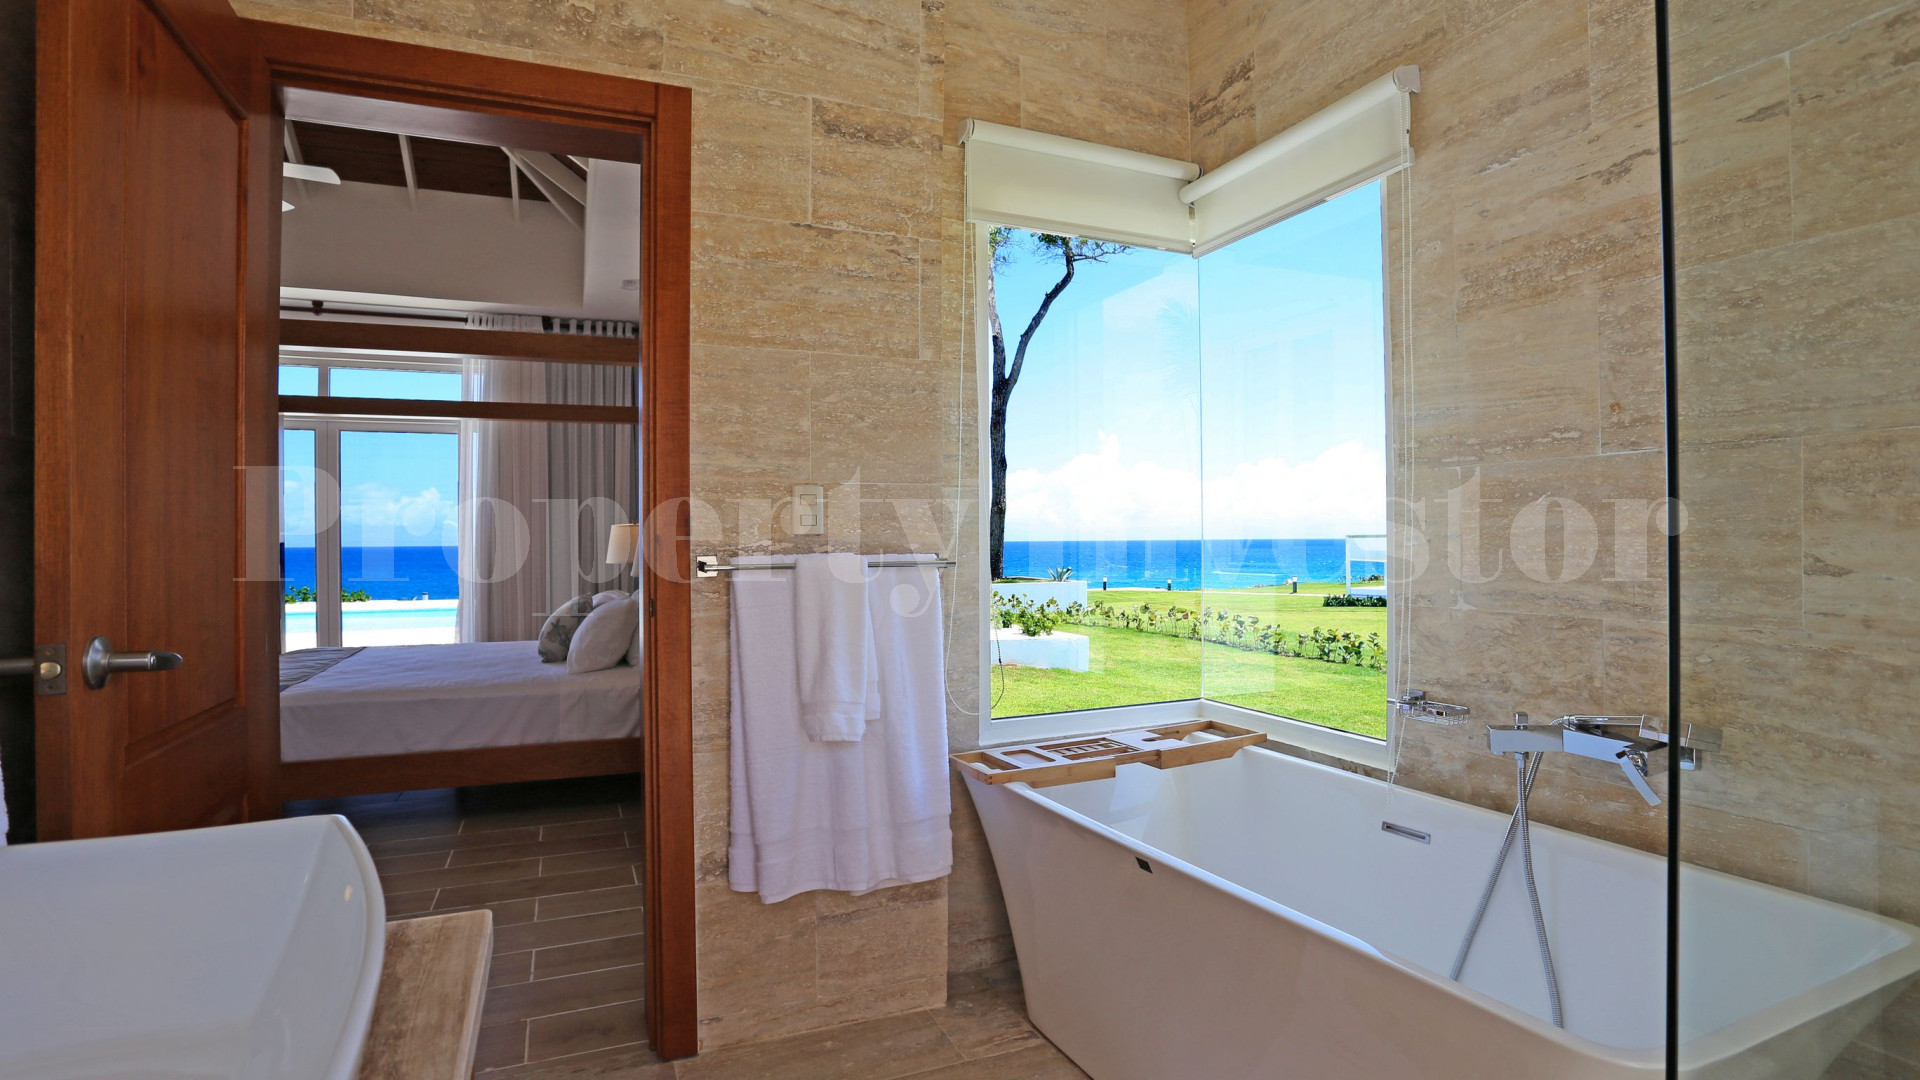 Вилла с 3 спальнями на берегу моря в Доминиканской Республике с финансирование на 30 лет (Вилла 2)